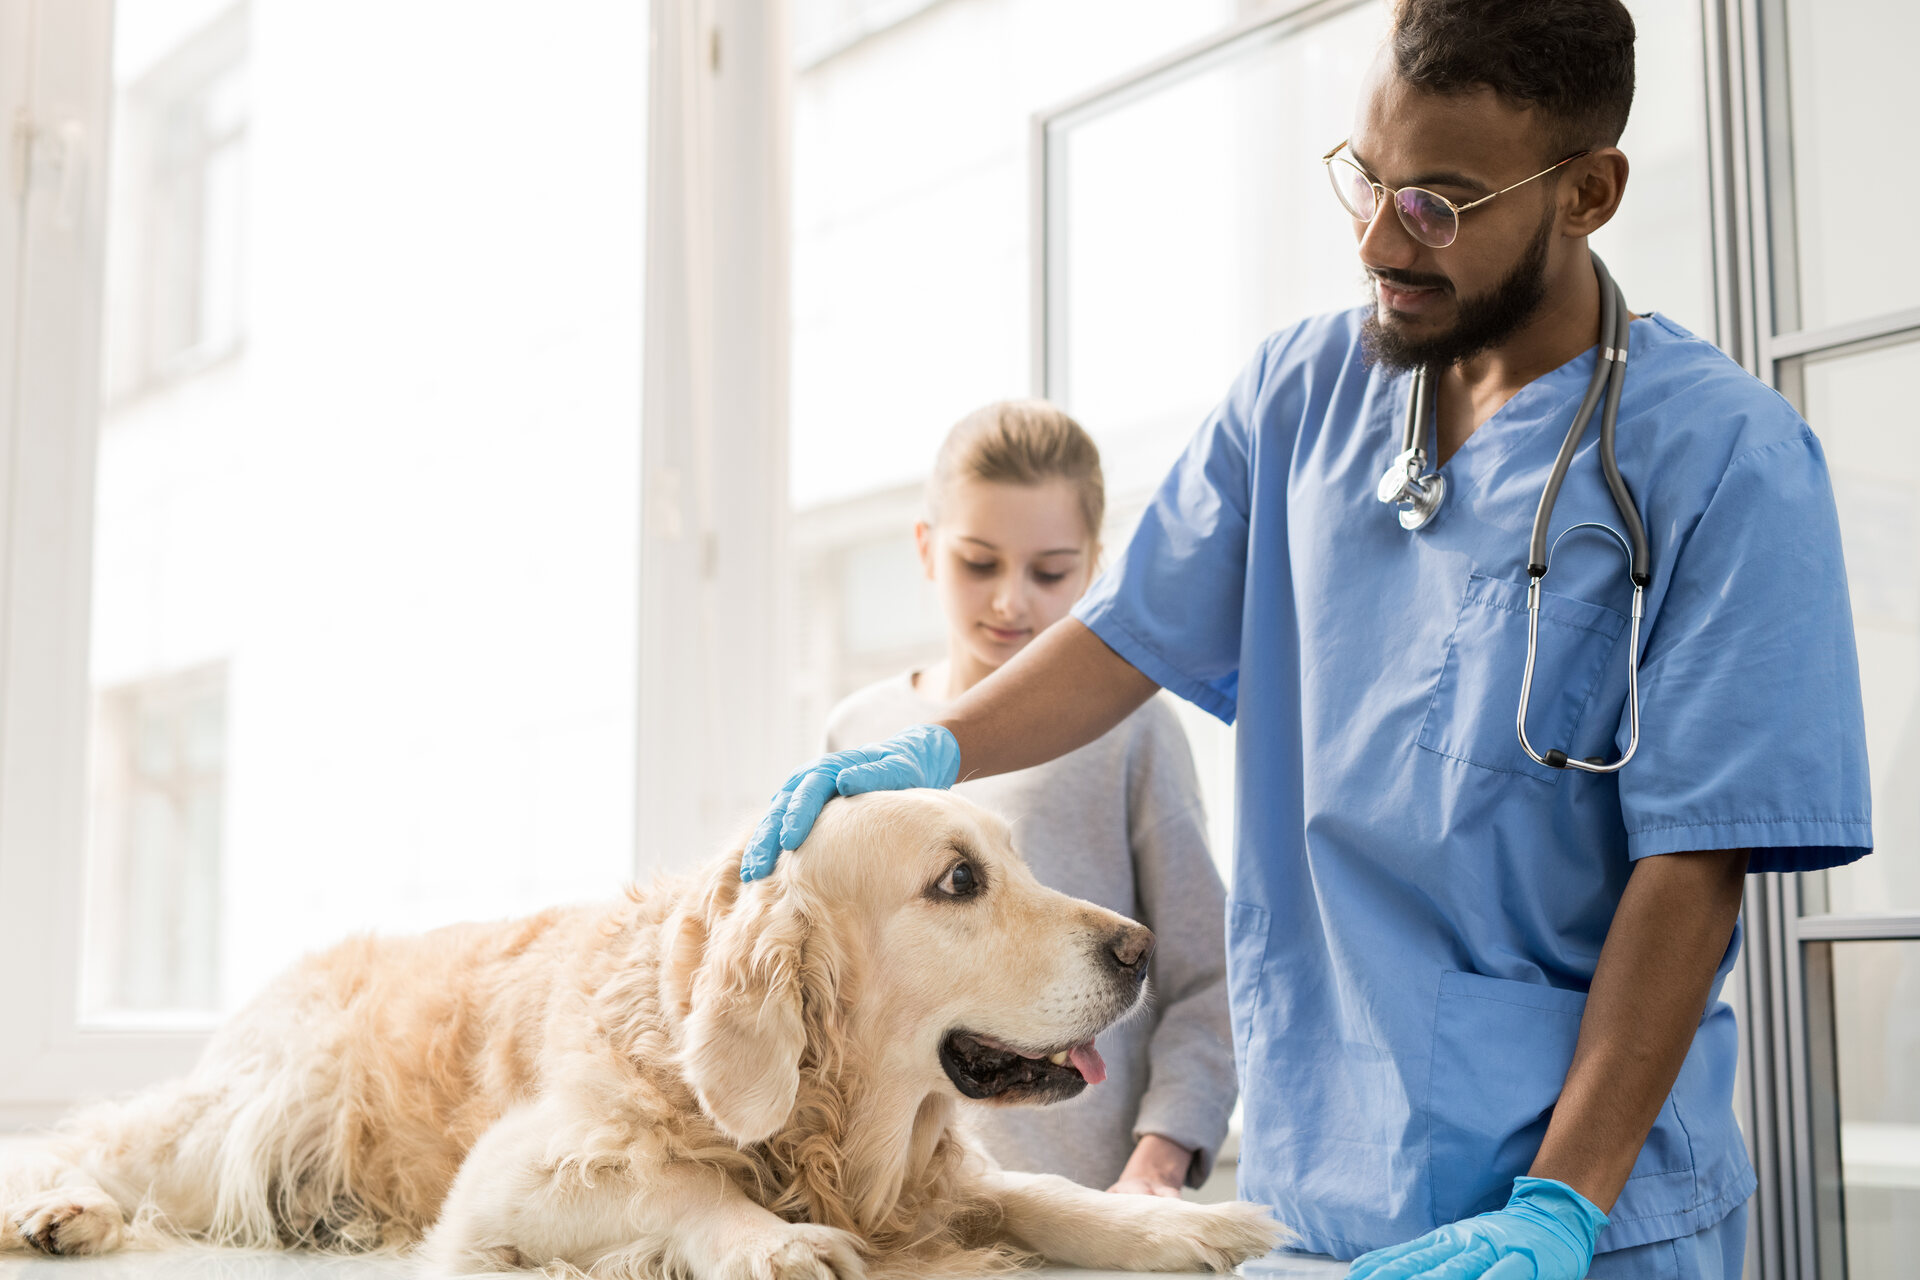 A vet examining a dog at a clinic